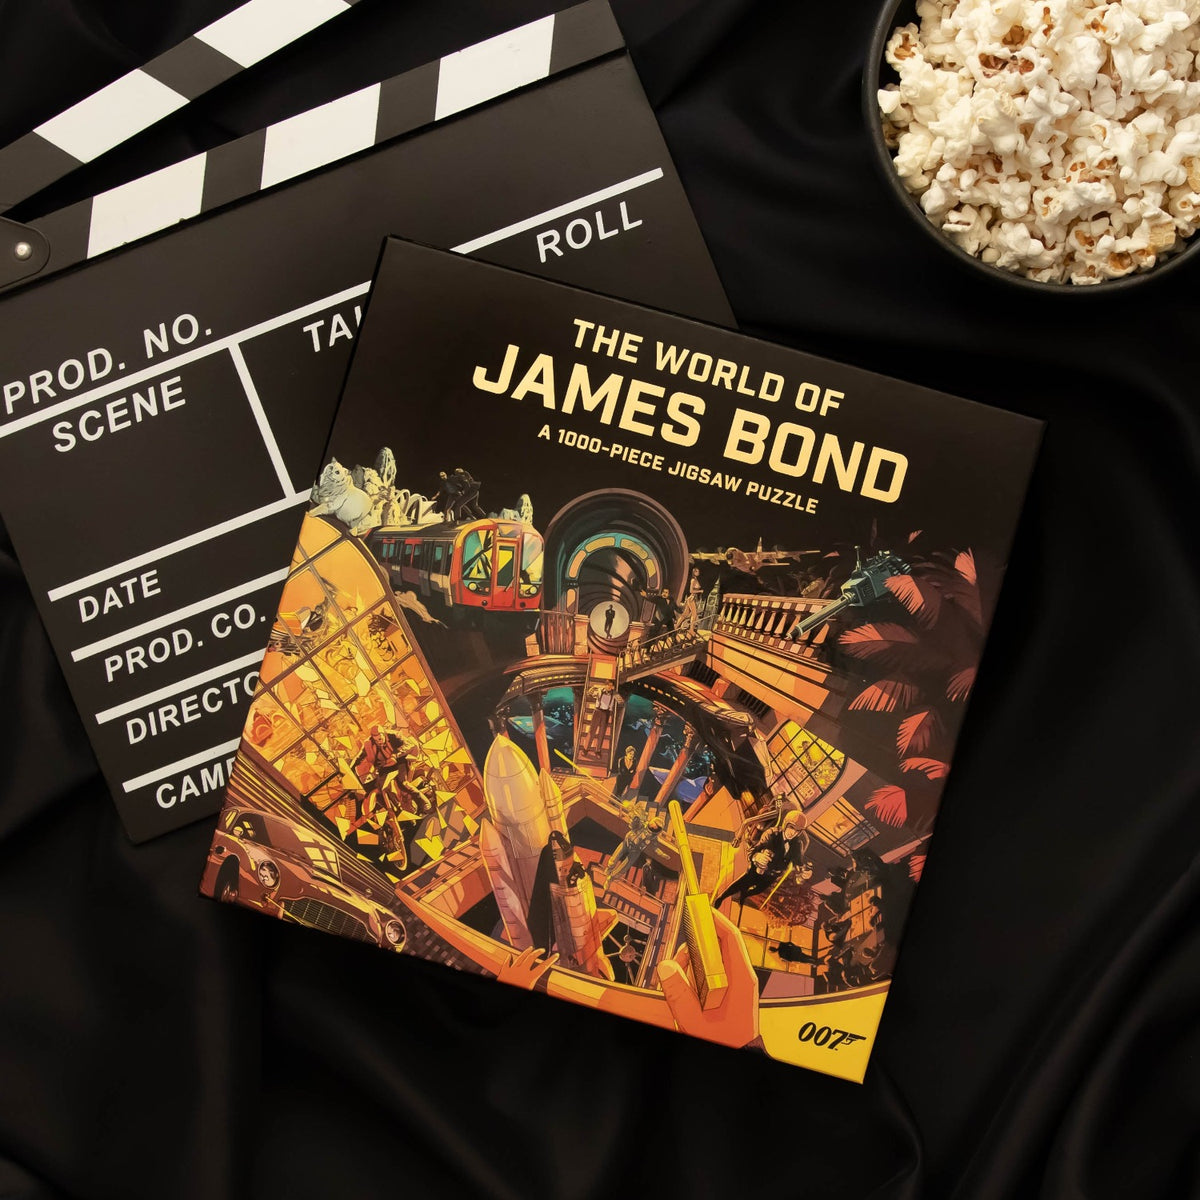 Die Welt von James Bond, 1000-teiliges Puzzle – von Laurence King